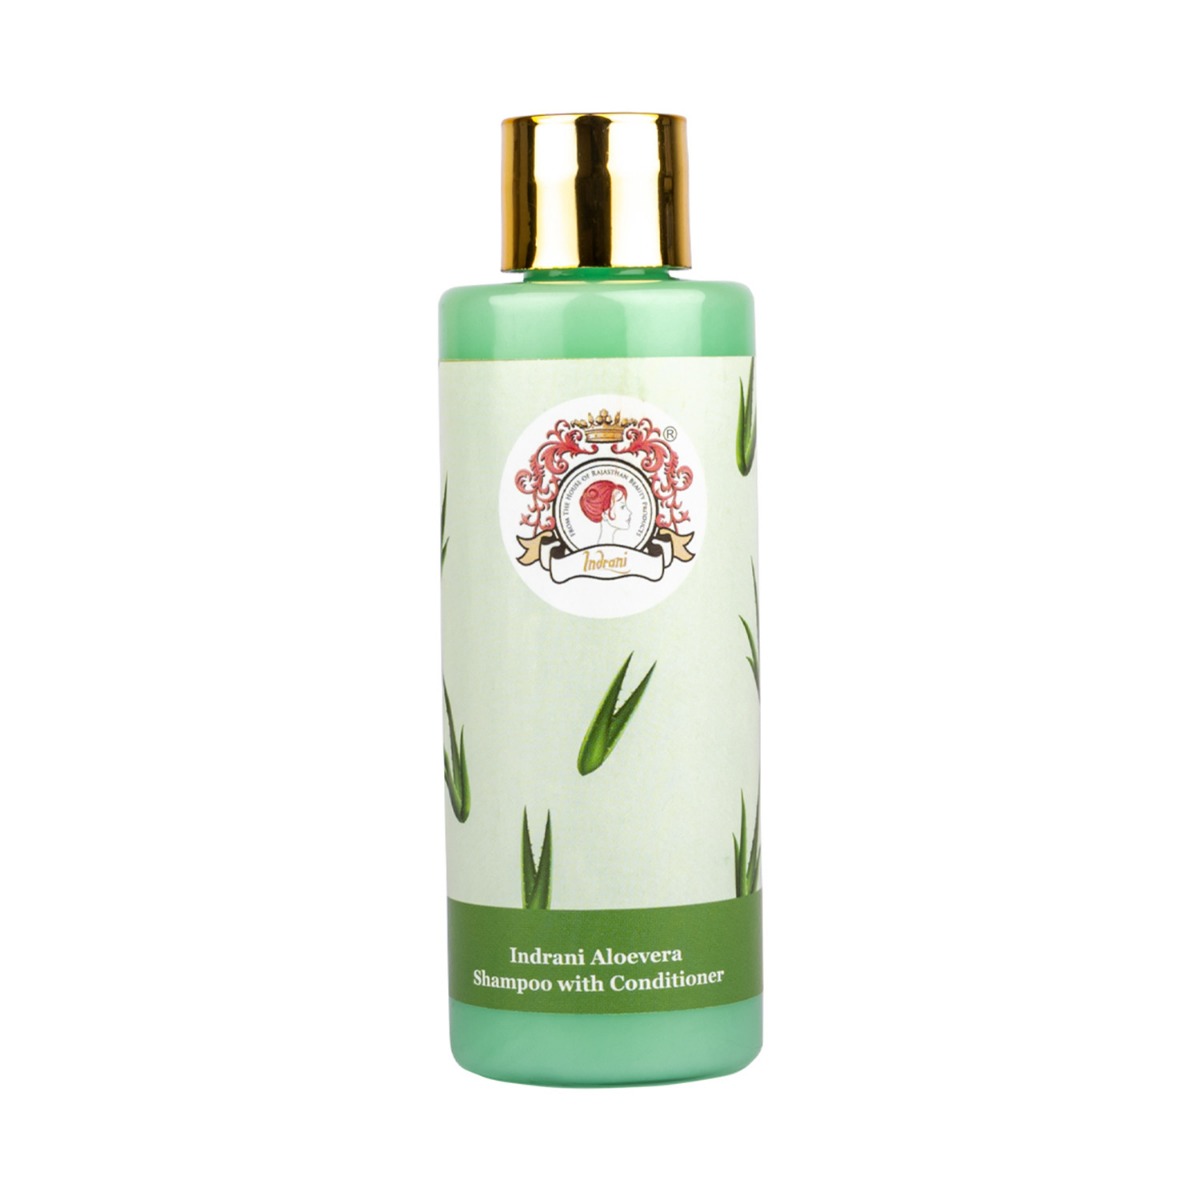 Indrani Aloevera Shampoo With Conditioner, 100ml